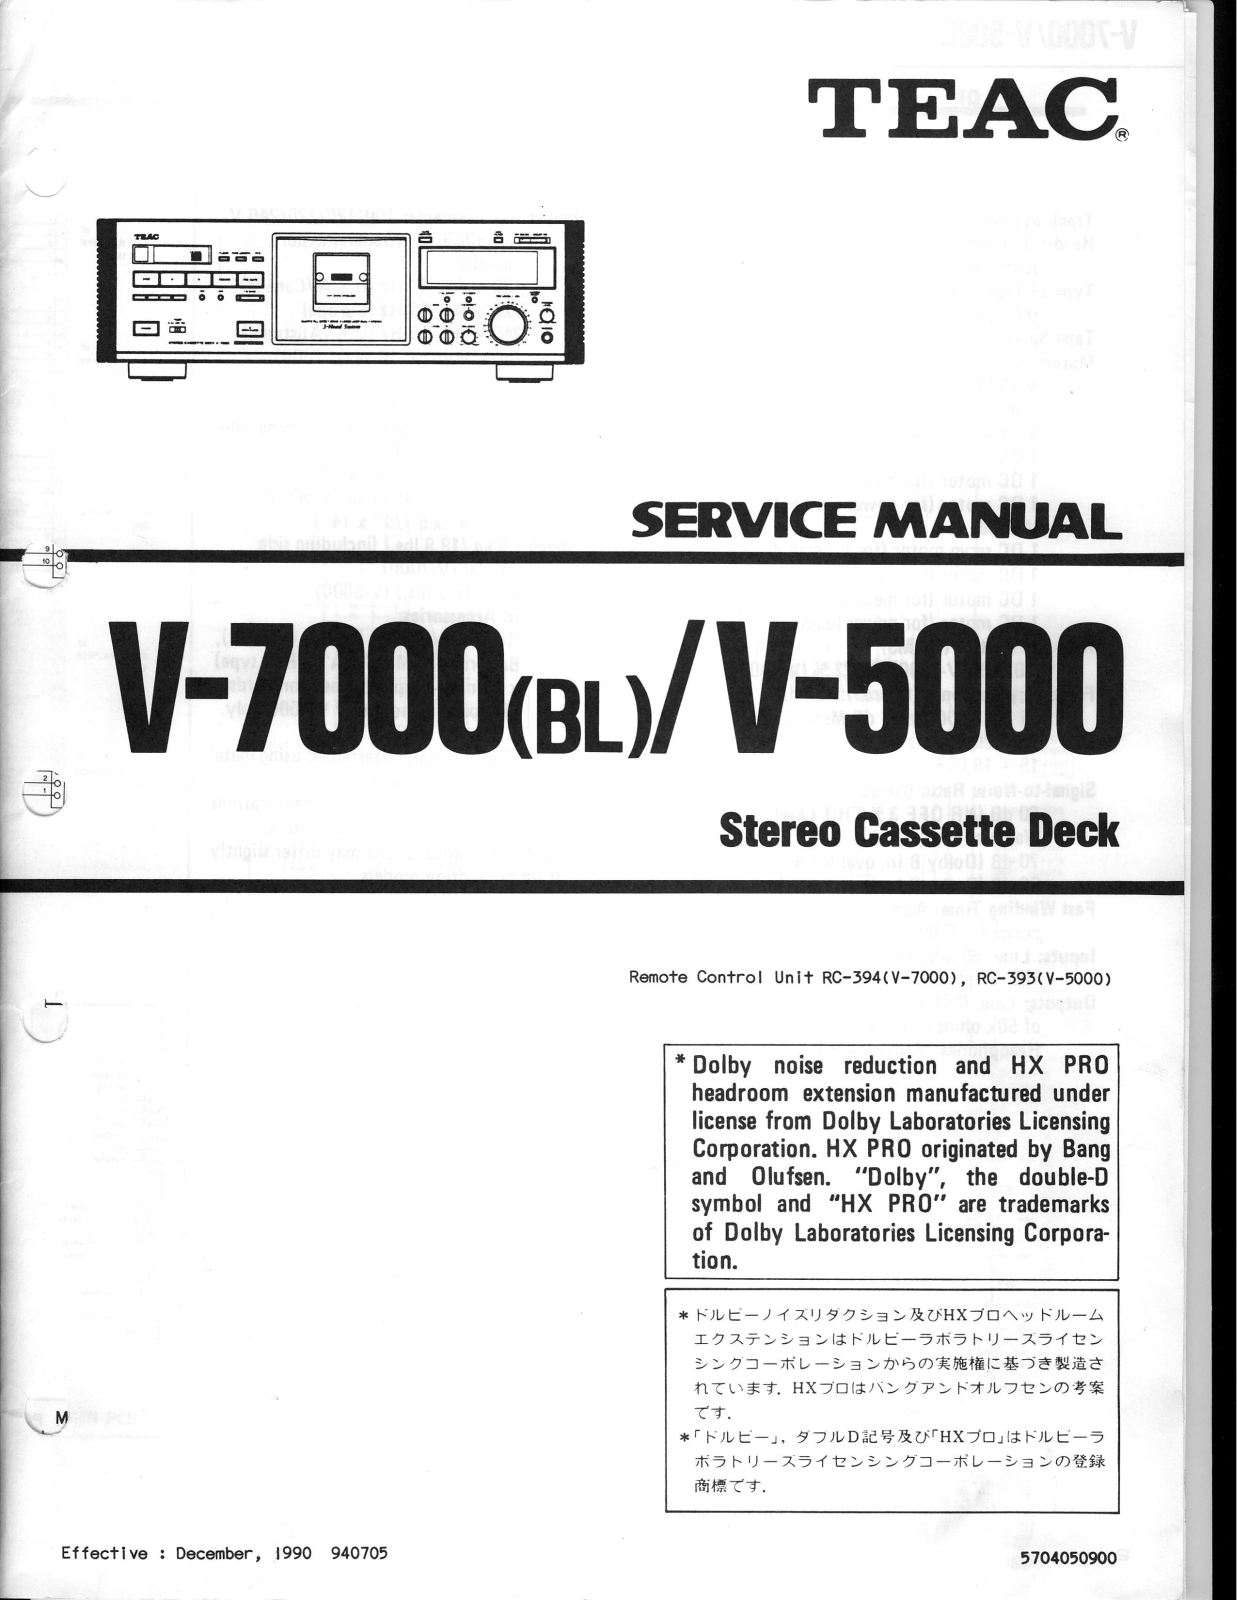 Teac V-5000, V-7000 Service Manual